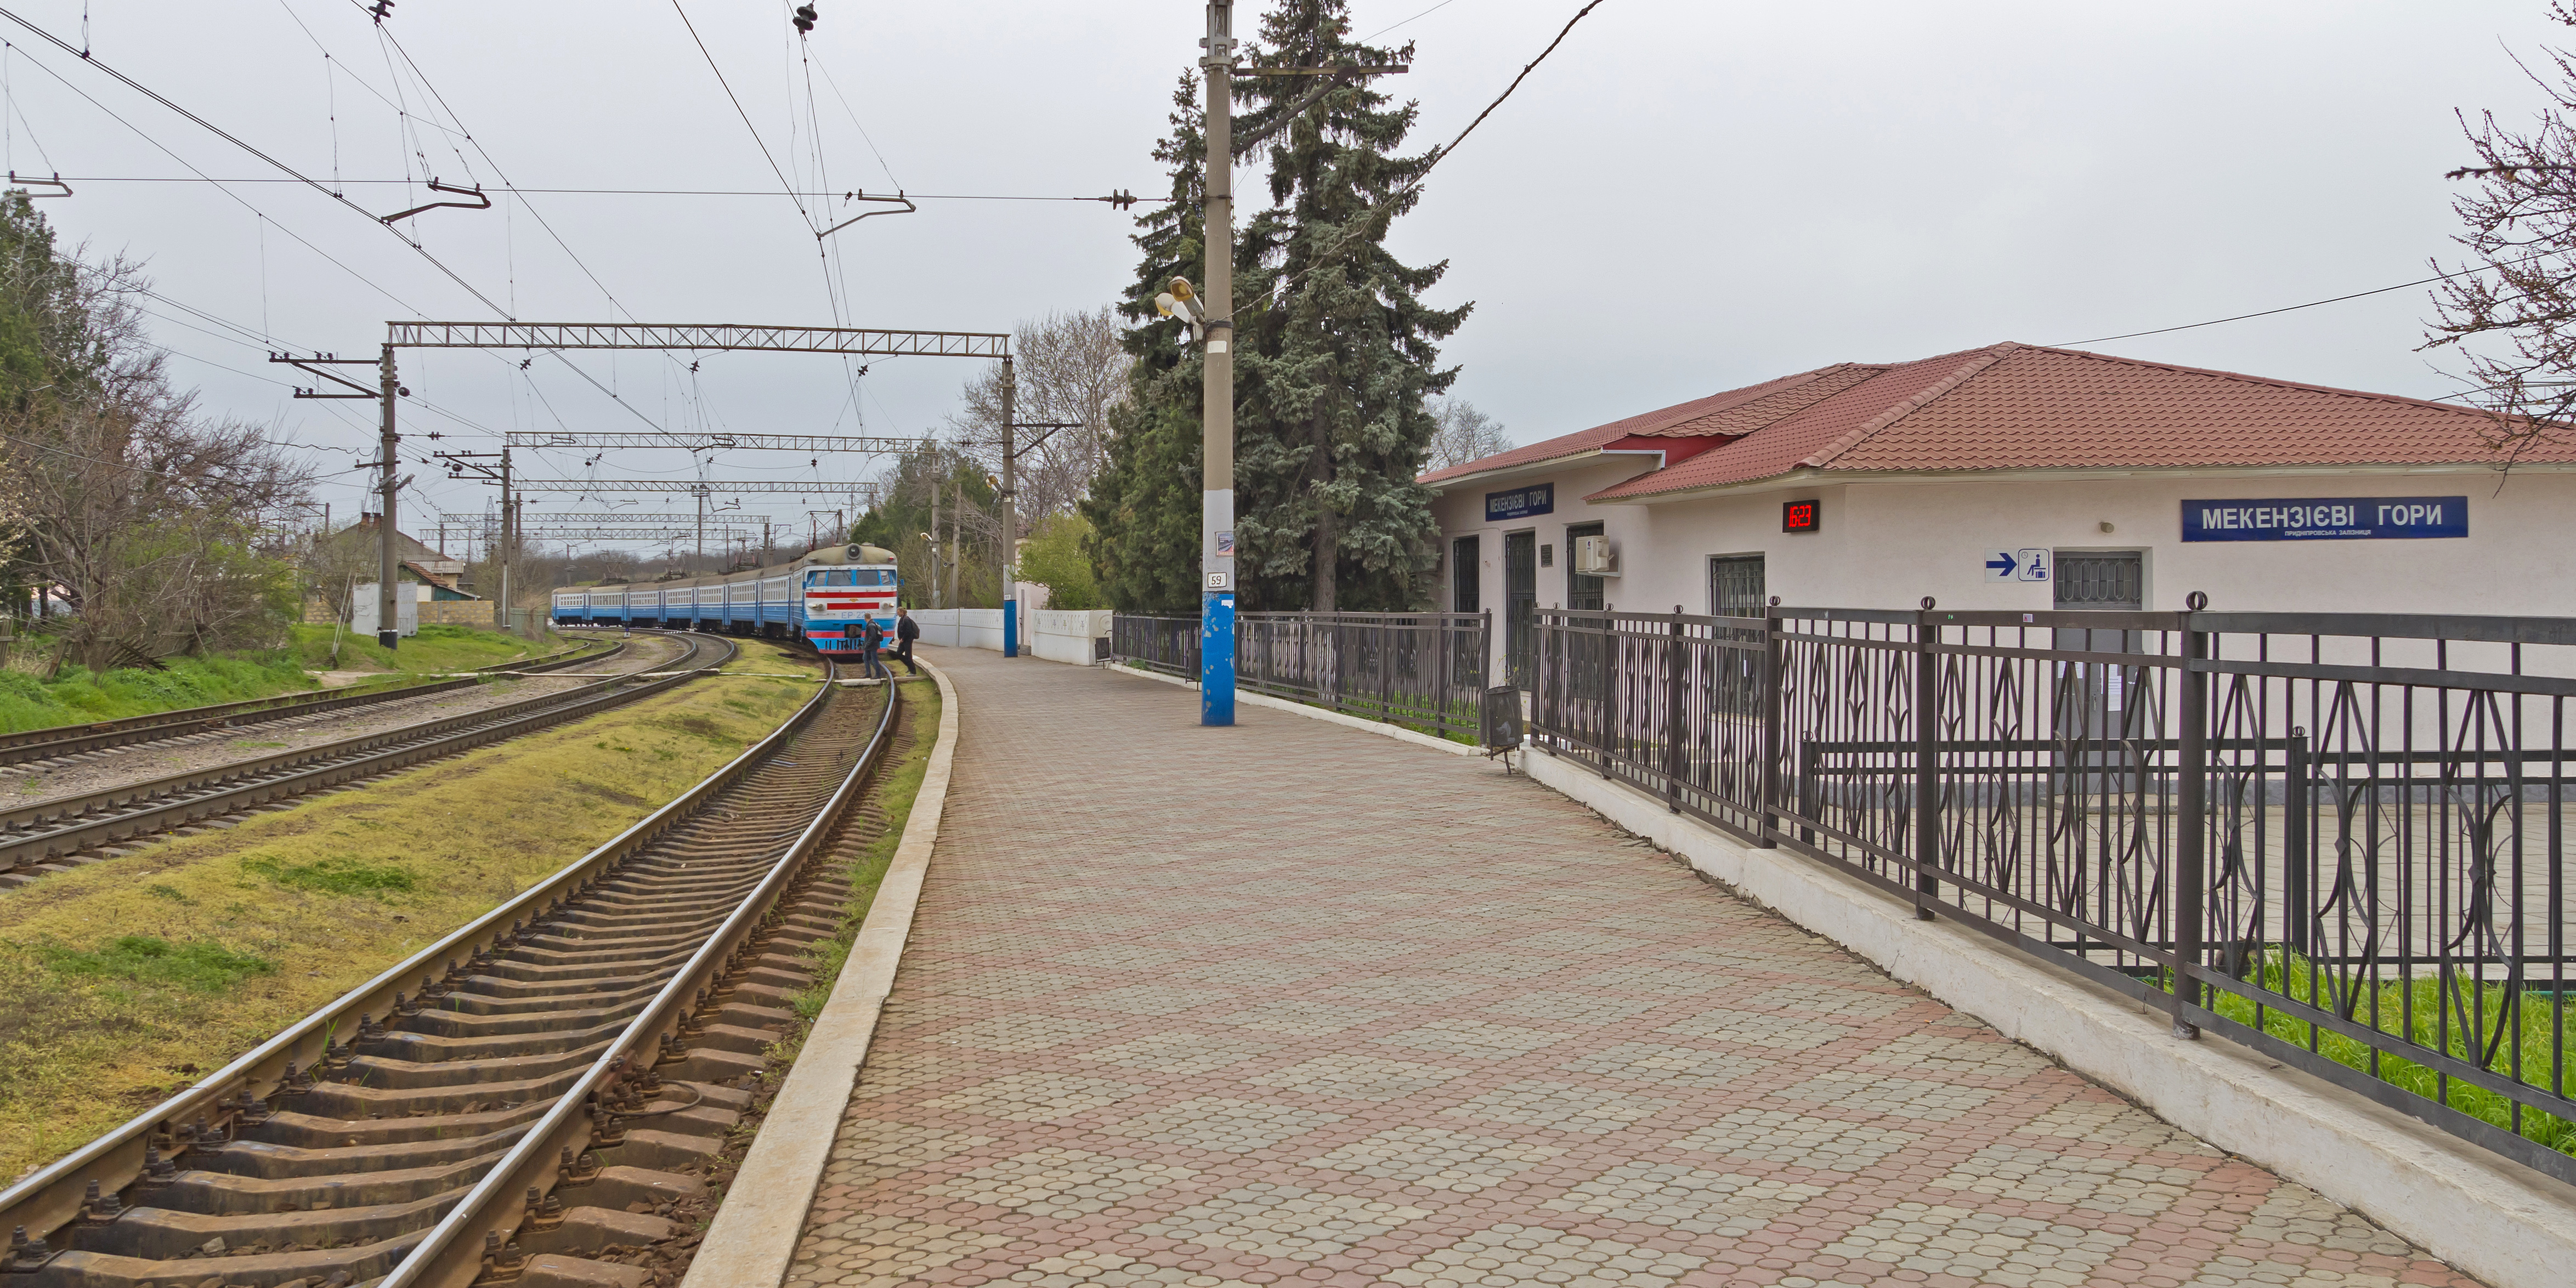 Sevastopol 04-14 img18 Mekenzievy Gory station